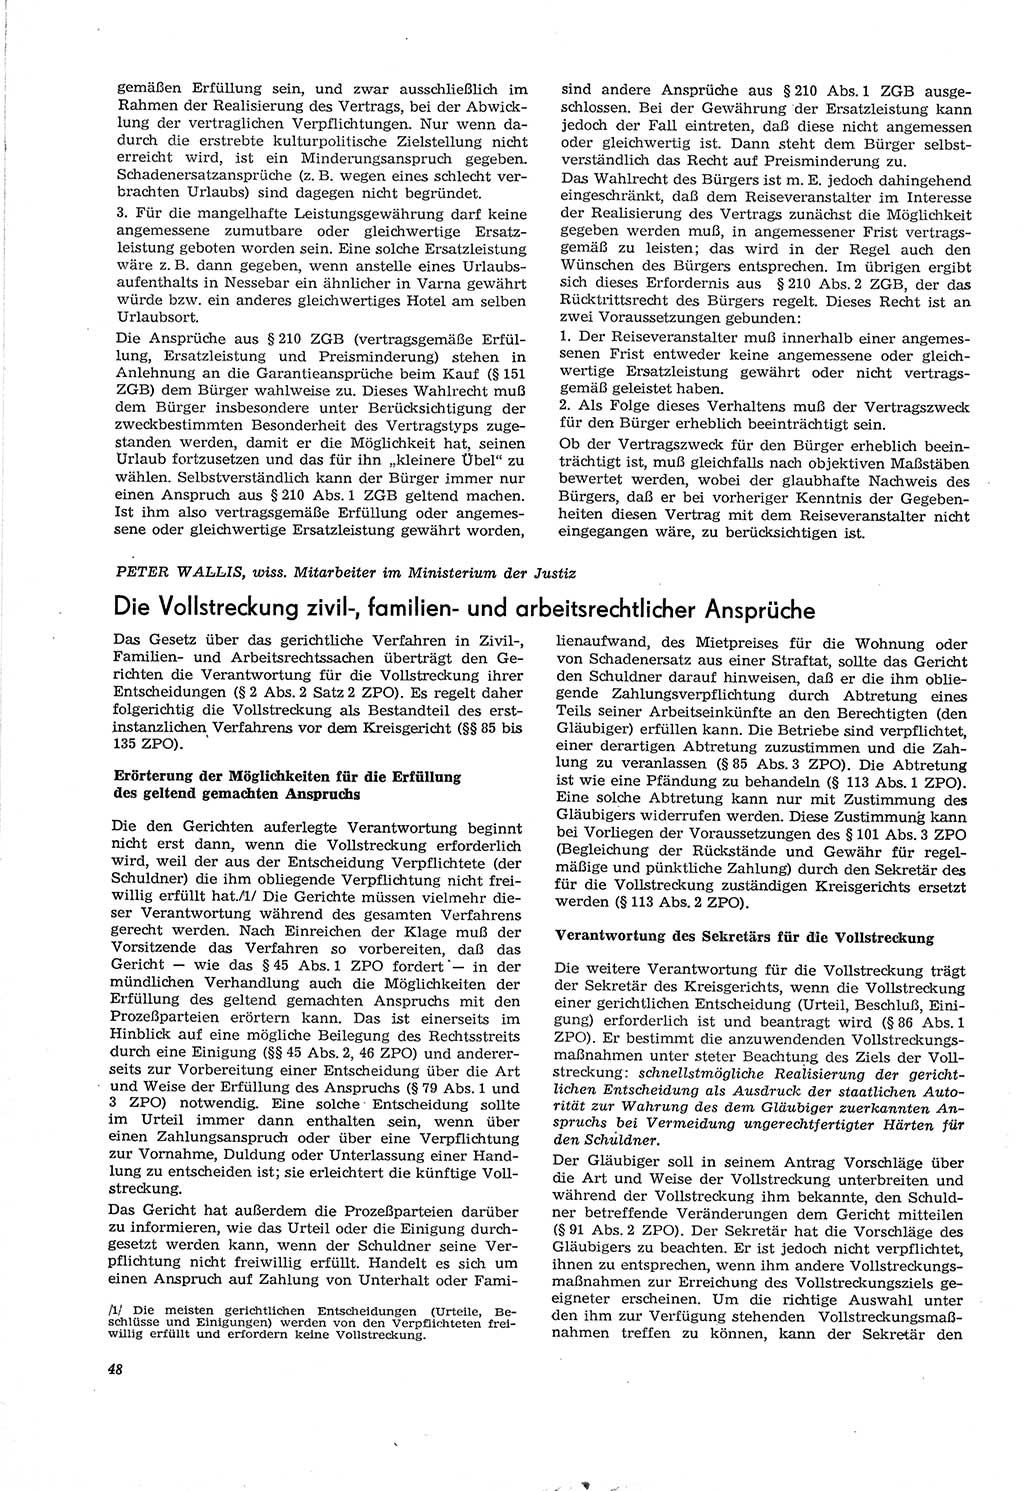 Neue Justiz (NJ), Zeitschrift für Recht und Rechtswissenschaft [Deutsche Demokratische Republik (DDR)], 30. Jahrgang 1976, Seite 48 (NJ DDR 1976, S. 48)